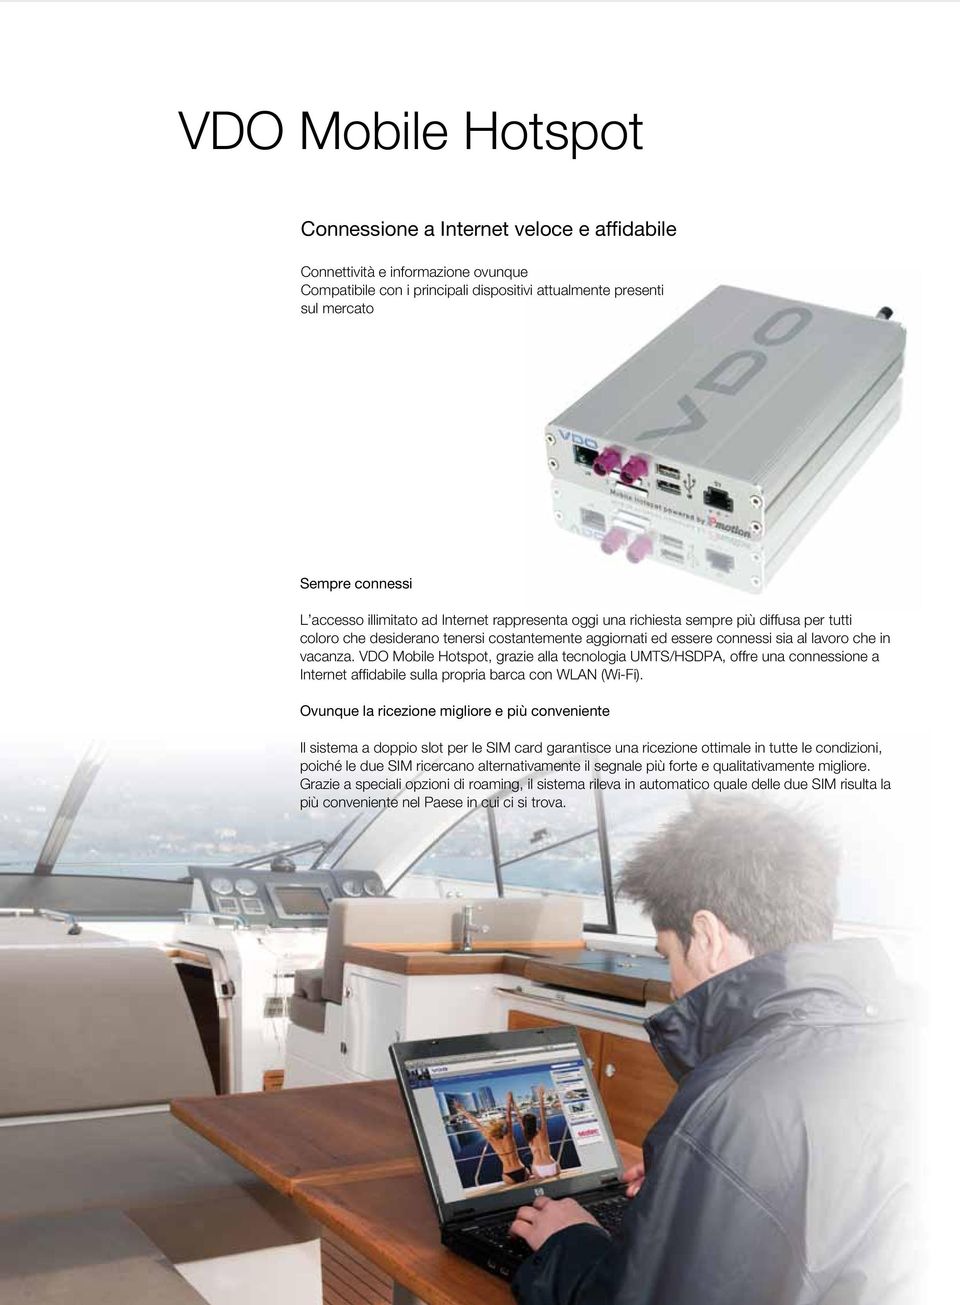 VDO Mobile Hotspot, grazie alla tecnologia UMTS/HSDPA, offre una connessione a Internet affi dabile sulla propria barca con WLAN (Wi-Fi).